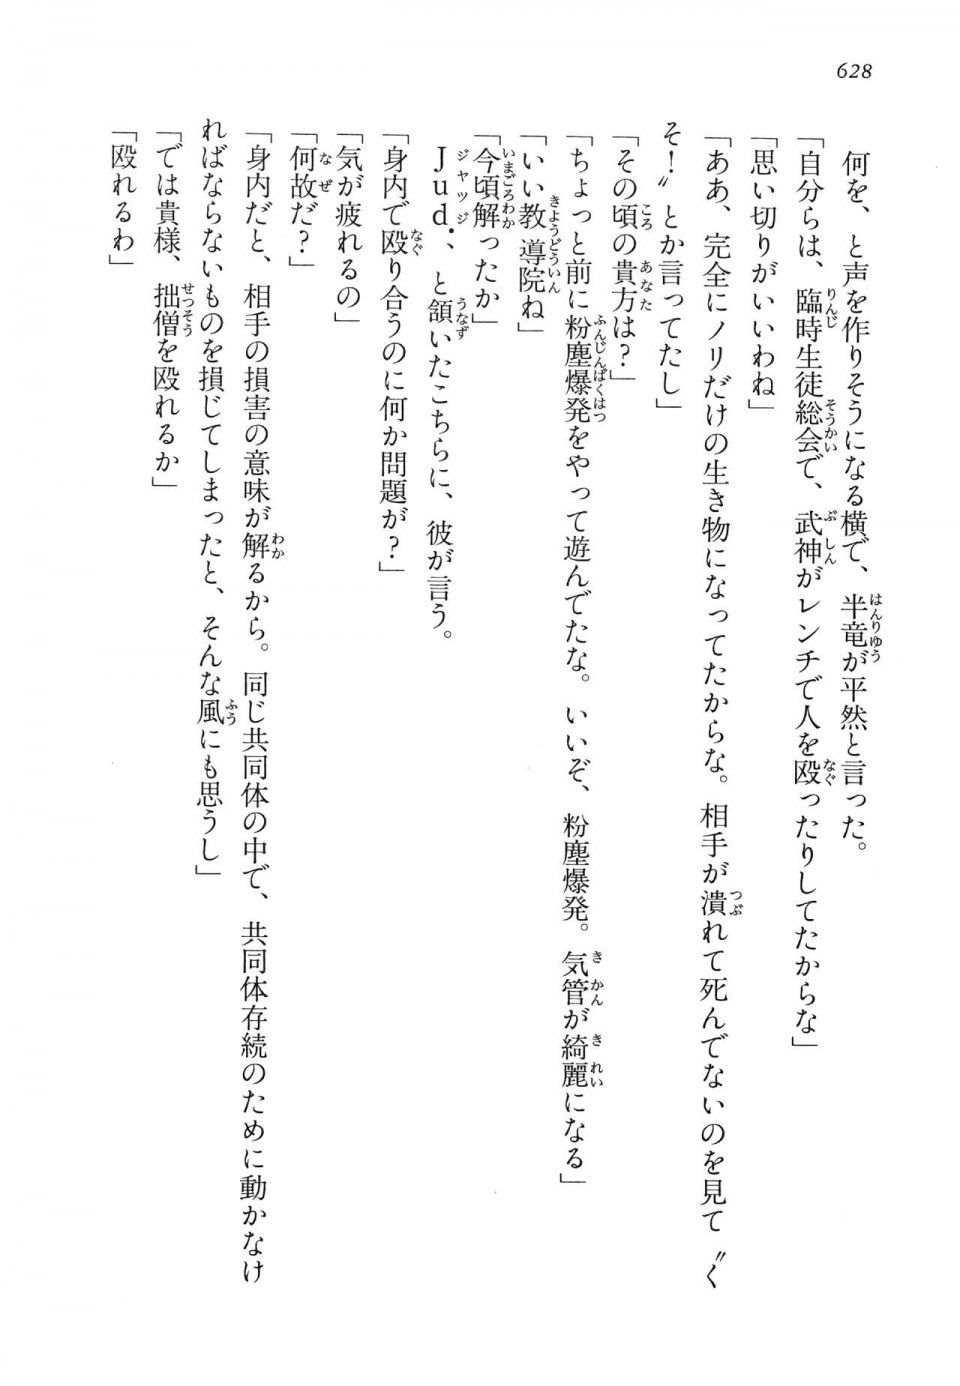 Kyoukai Senjou no Horizon LN Vol 14(6B) - Photo #628